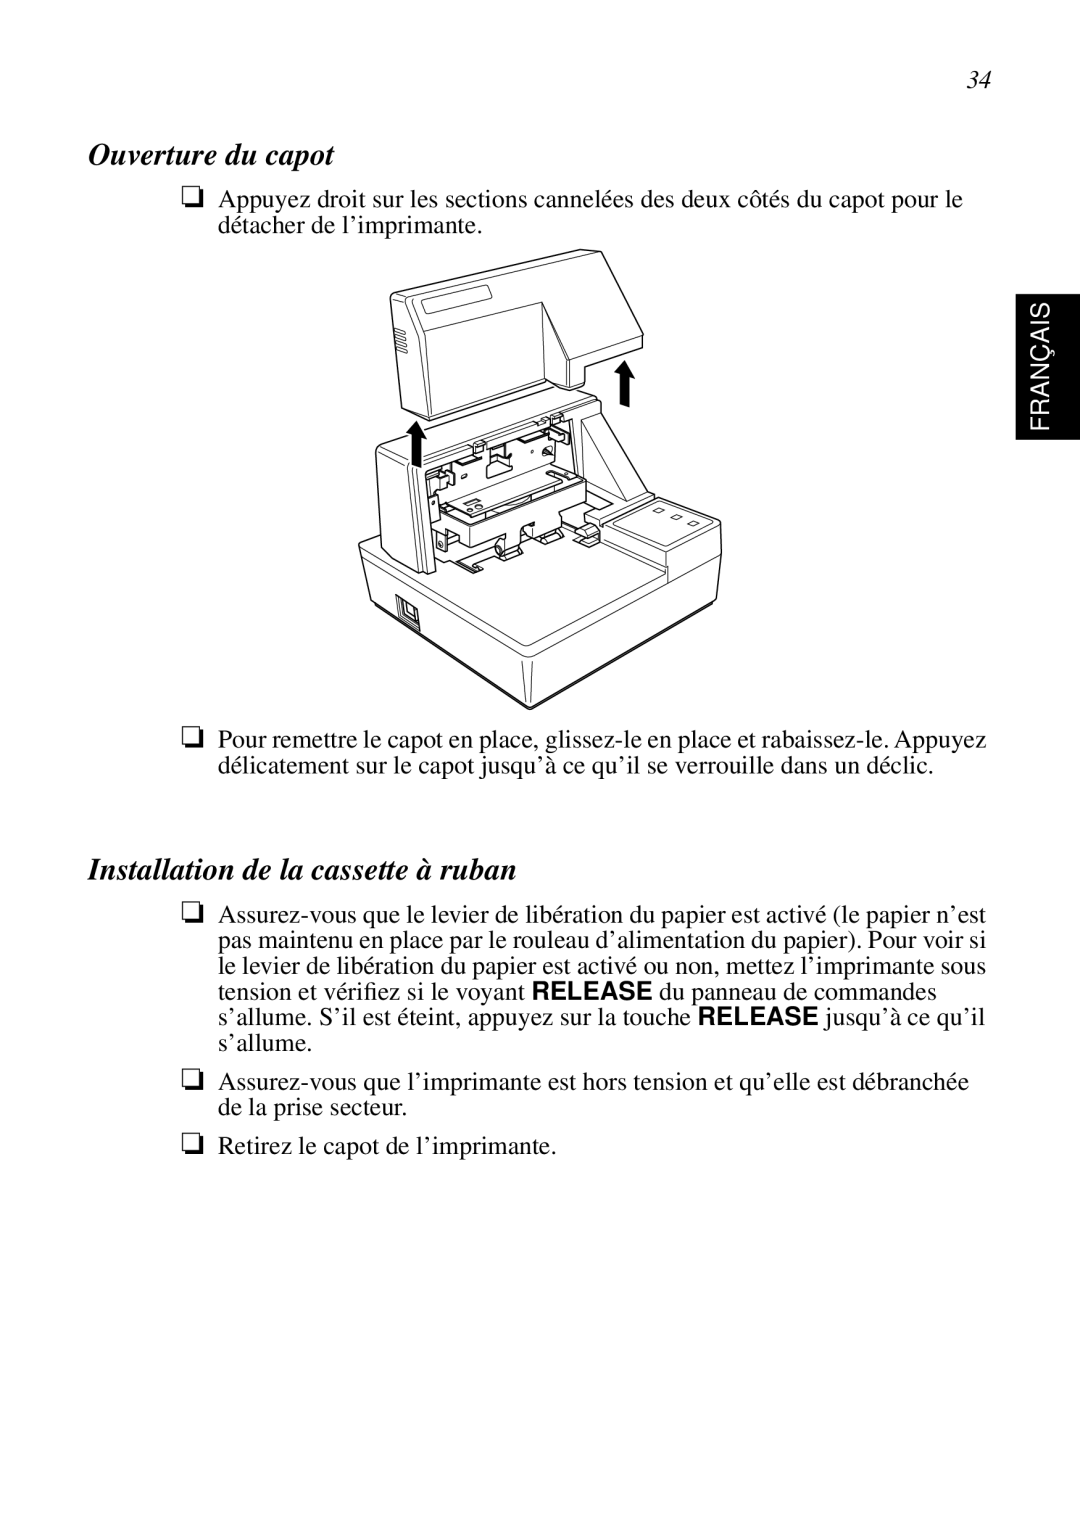 Star Micronics SP298 user manual Ouverture du capot, Installation de la cassette à ruban, Français 